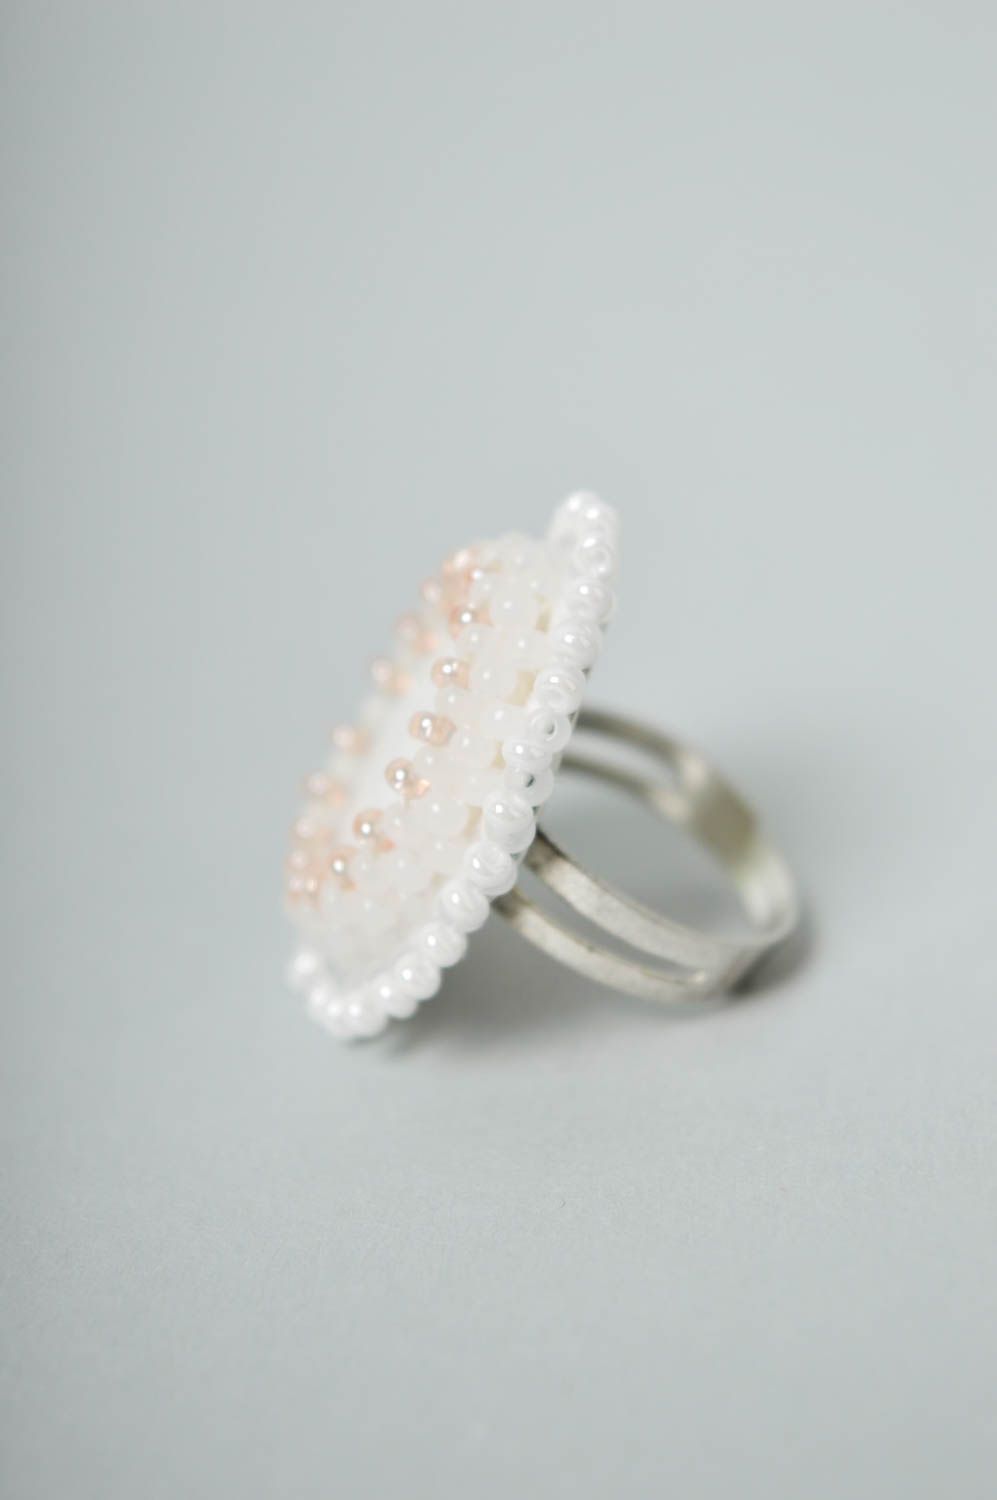 Красивое кольцо ручной работы необычное кольцо с бисером белое кольцо из кожи фото 5